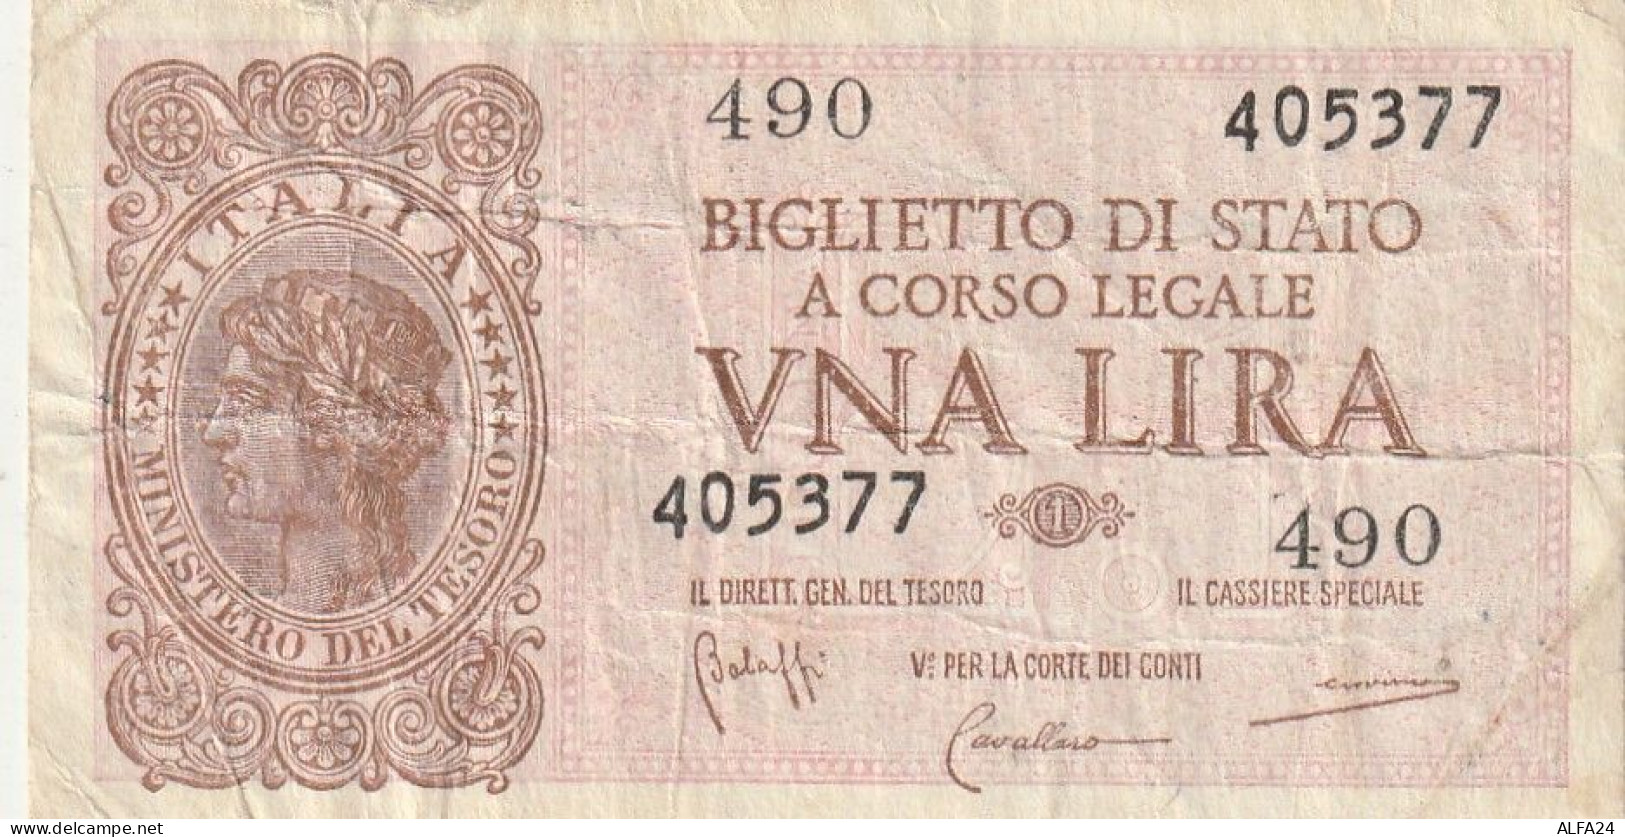 BANCONOTA BIGLIETTO DI STATO ITALIA 1 LIRA VF  (B_351 - Italië – 1 Lira